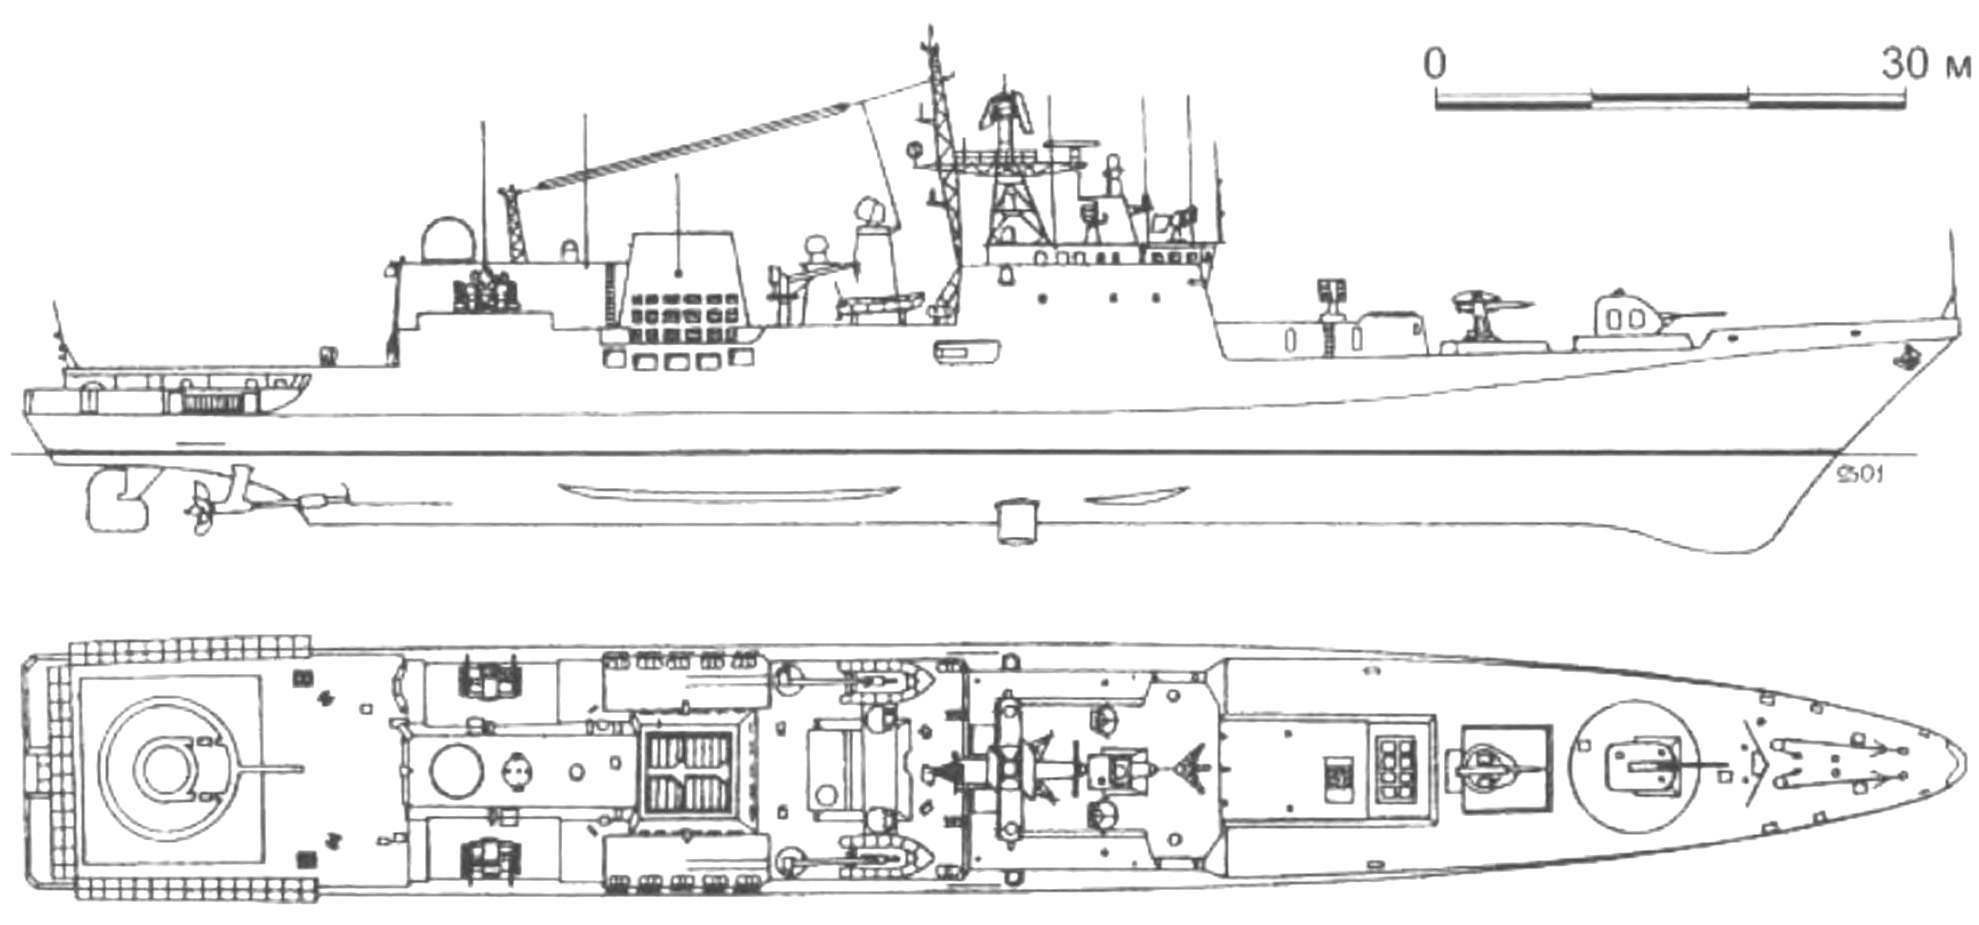 Адмирал эссен - фрегат: исторические факты, назначение, технические характеристики